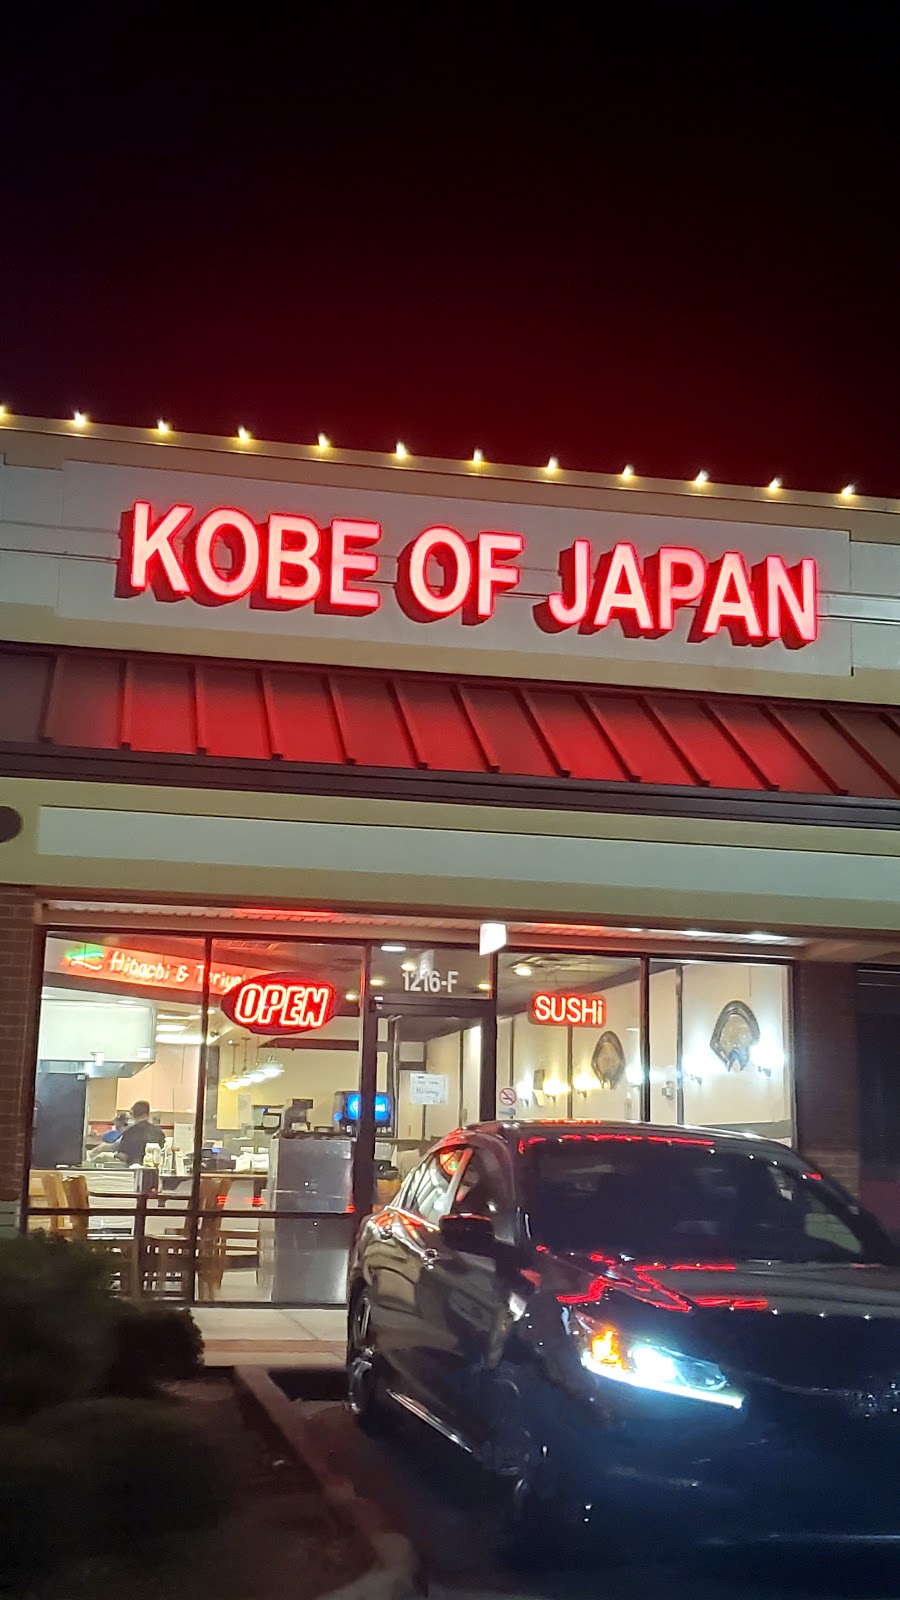 Kobe of Japan | 1216 - F, Bridford Pkwy, Greensboro, NC 27407, USA | Phone: (336) 299-1364